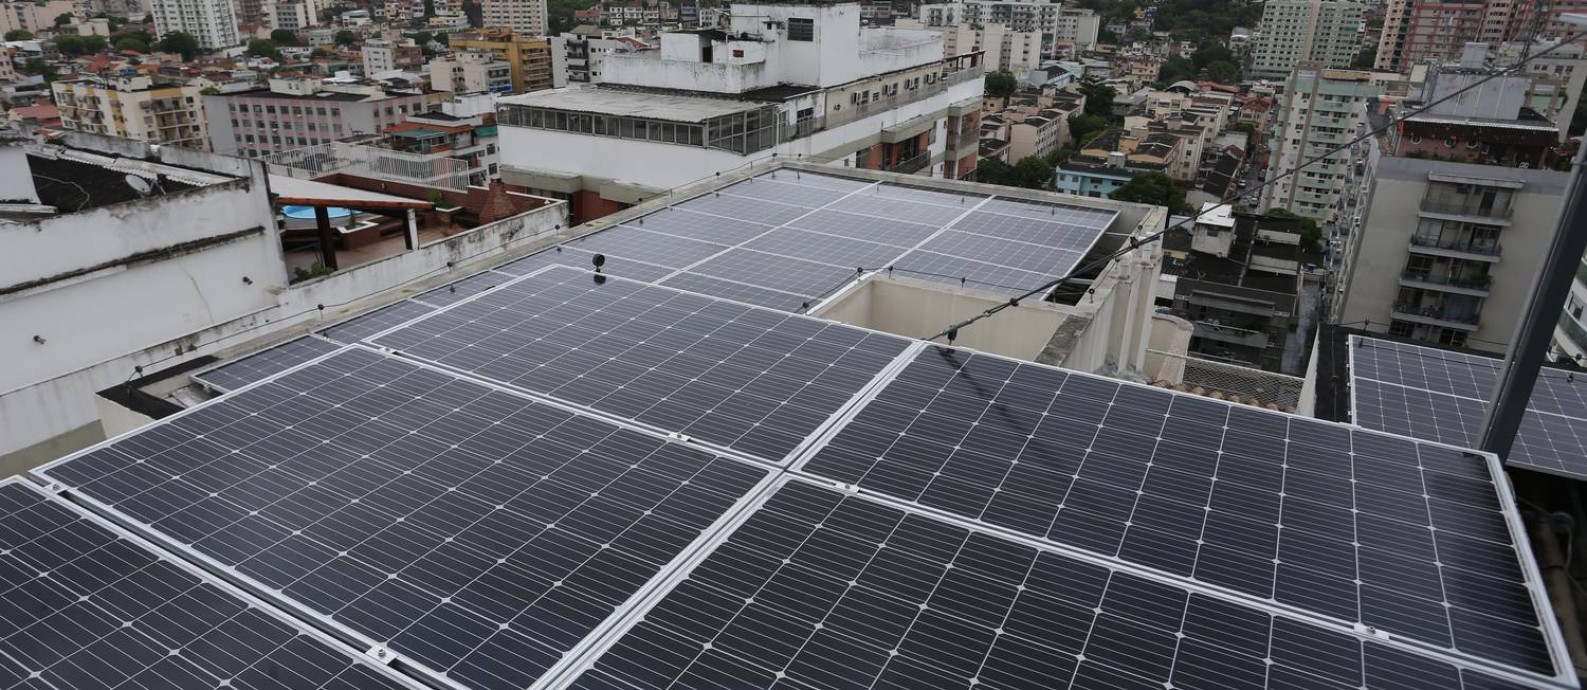 Painéis de energia solar em condomínio do Méier, Zona Norte do Rio Foto: Pedro Teixeira / Agência O Globo